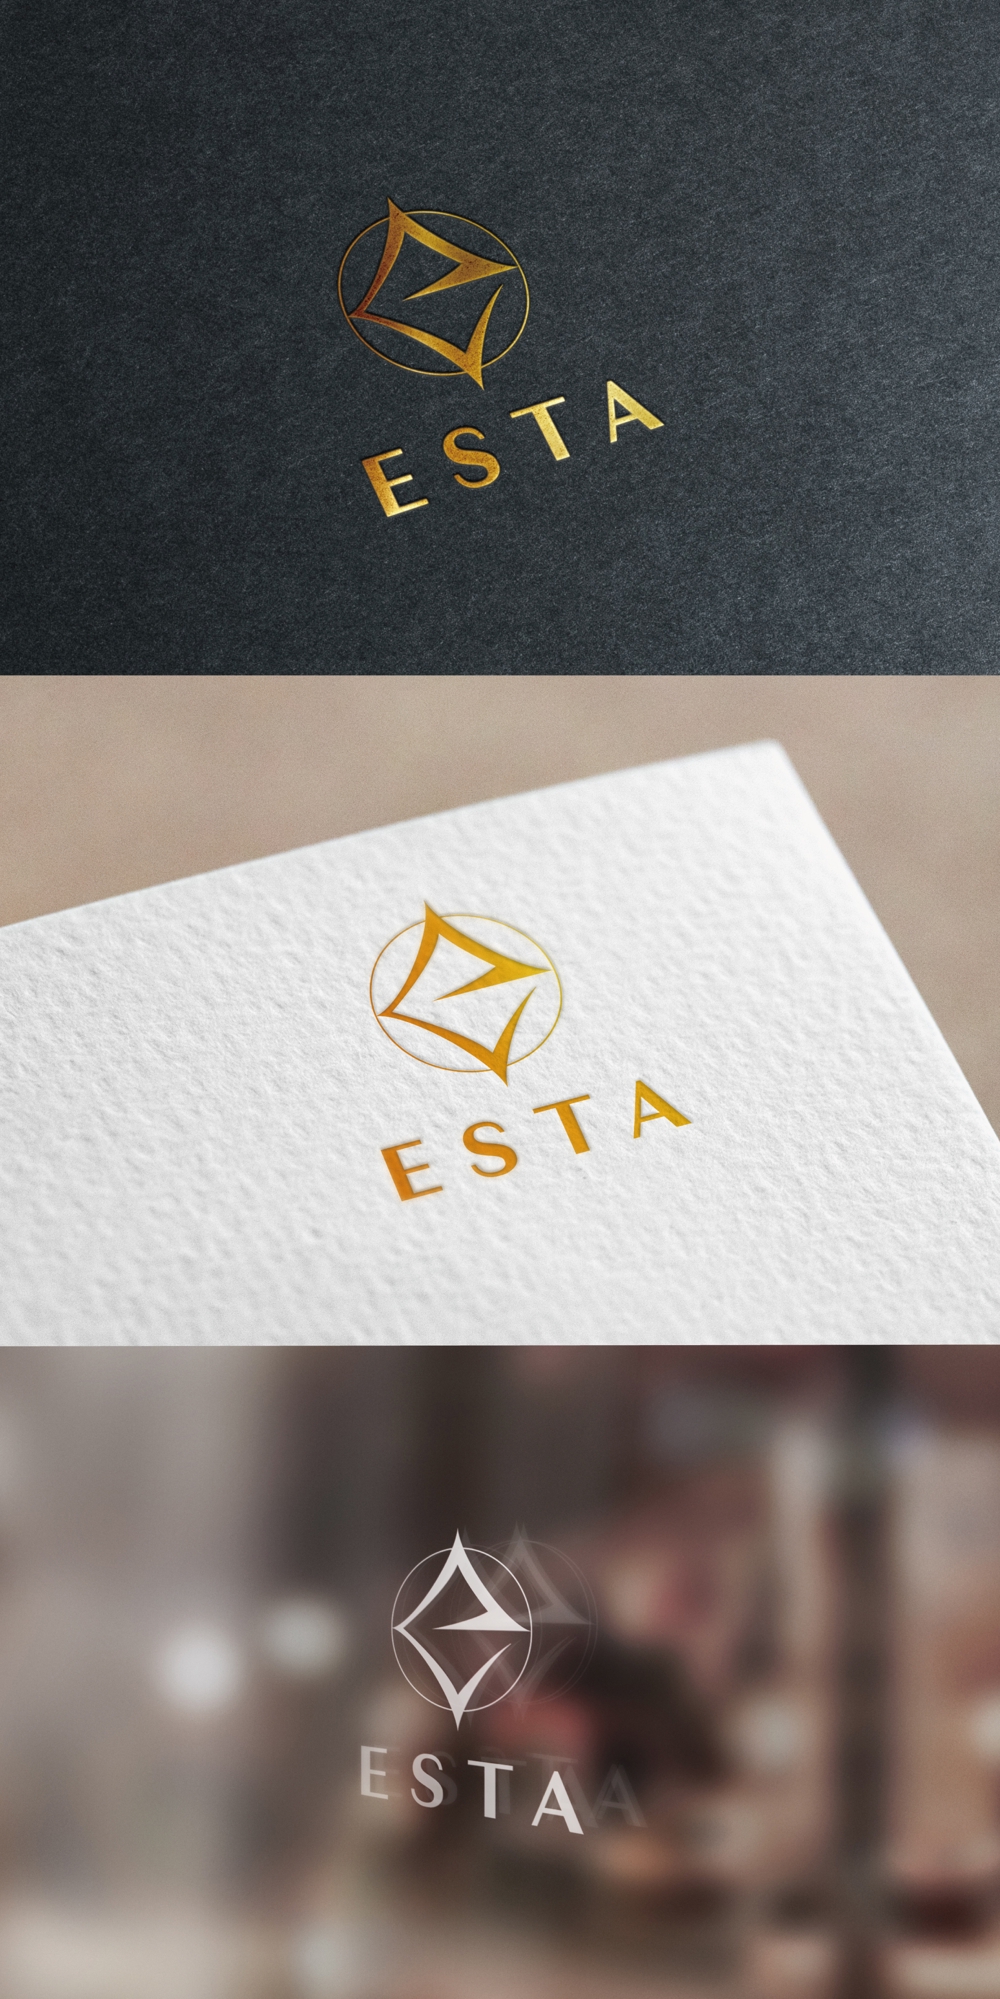 ESTA_logo01_01.jpg